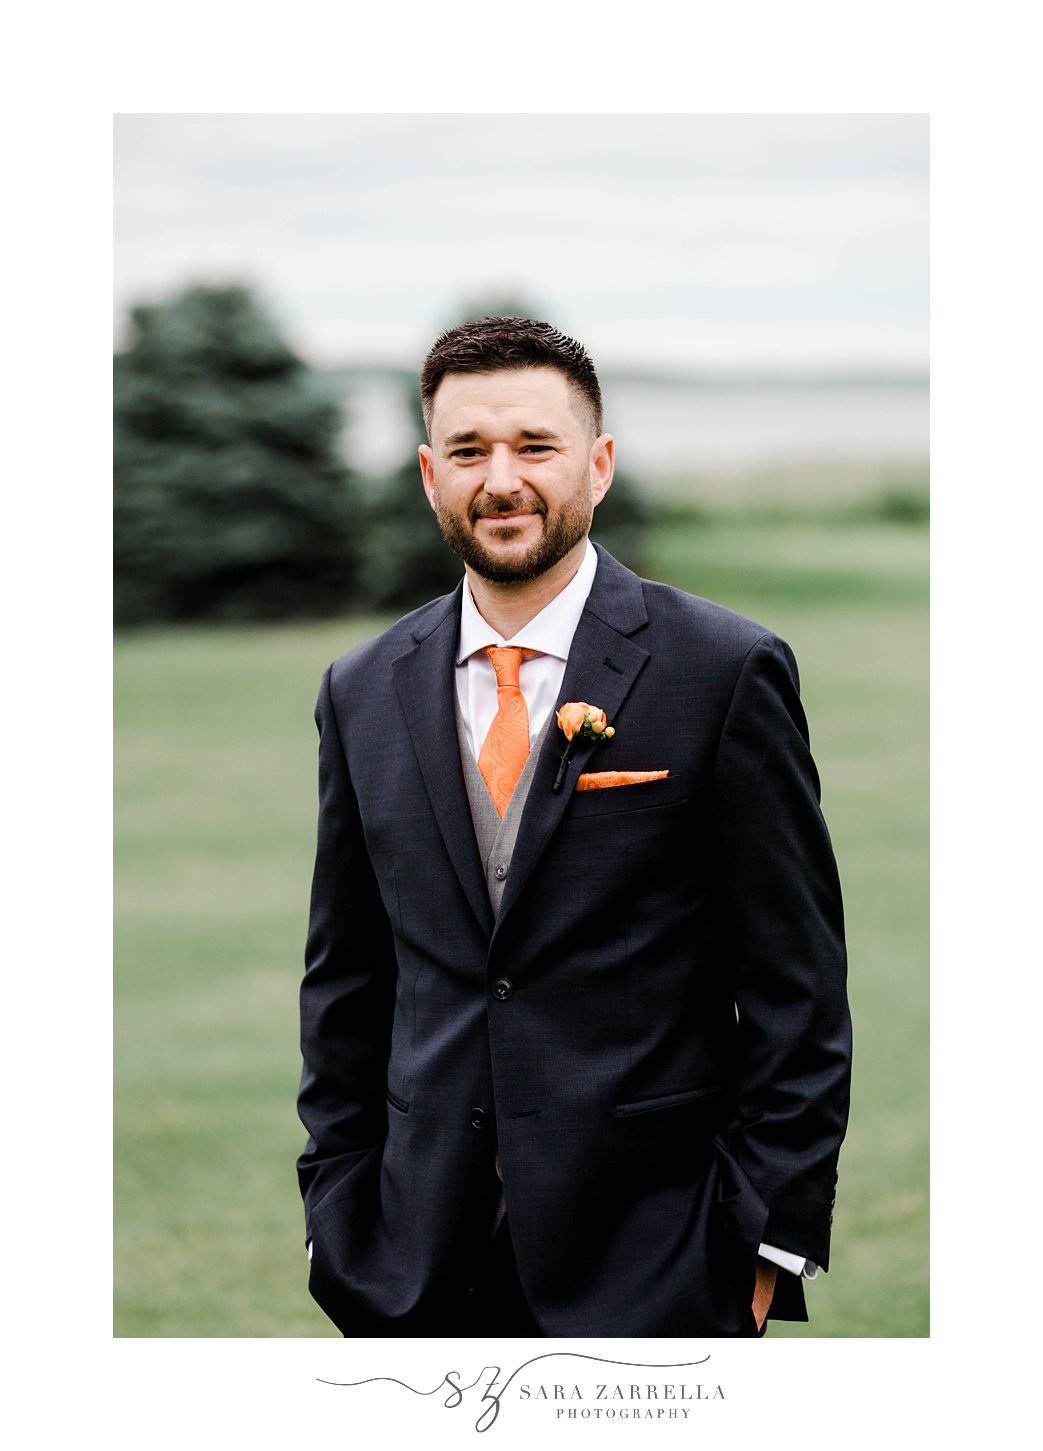 groom stands in black suit with orange tie